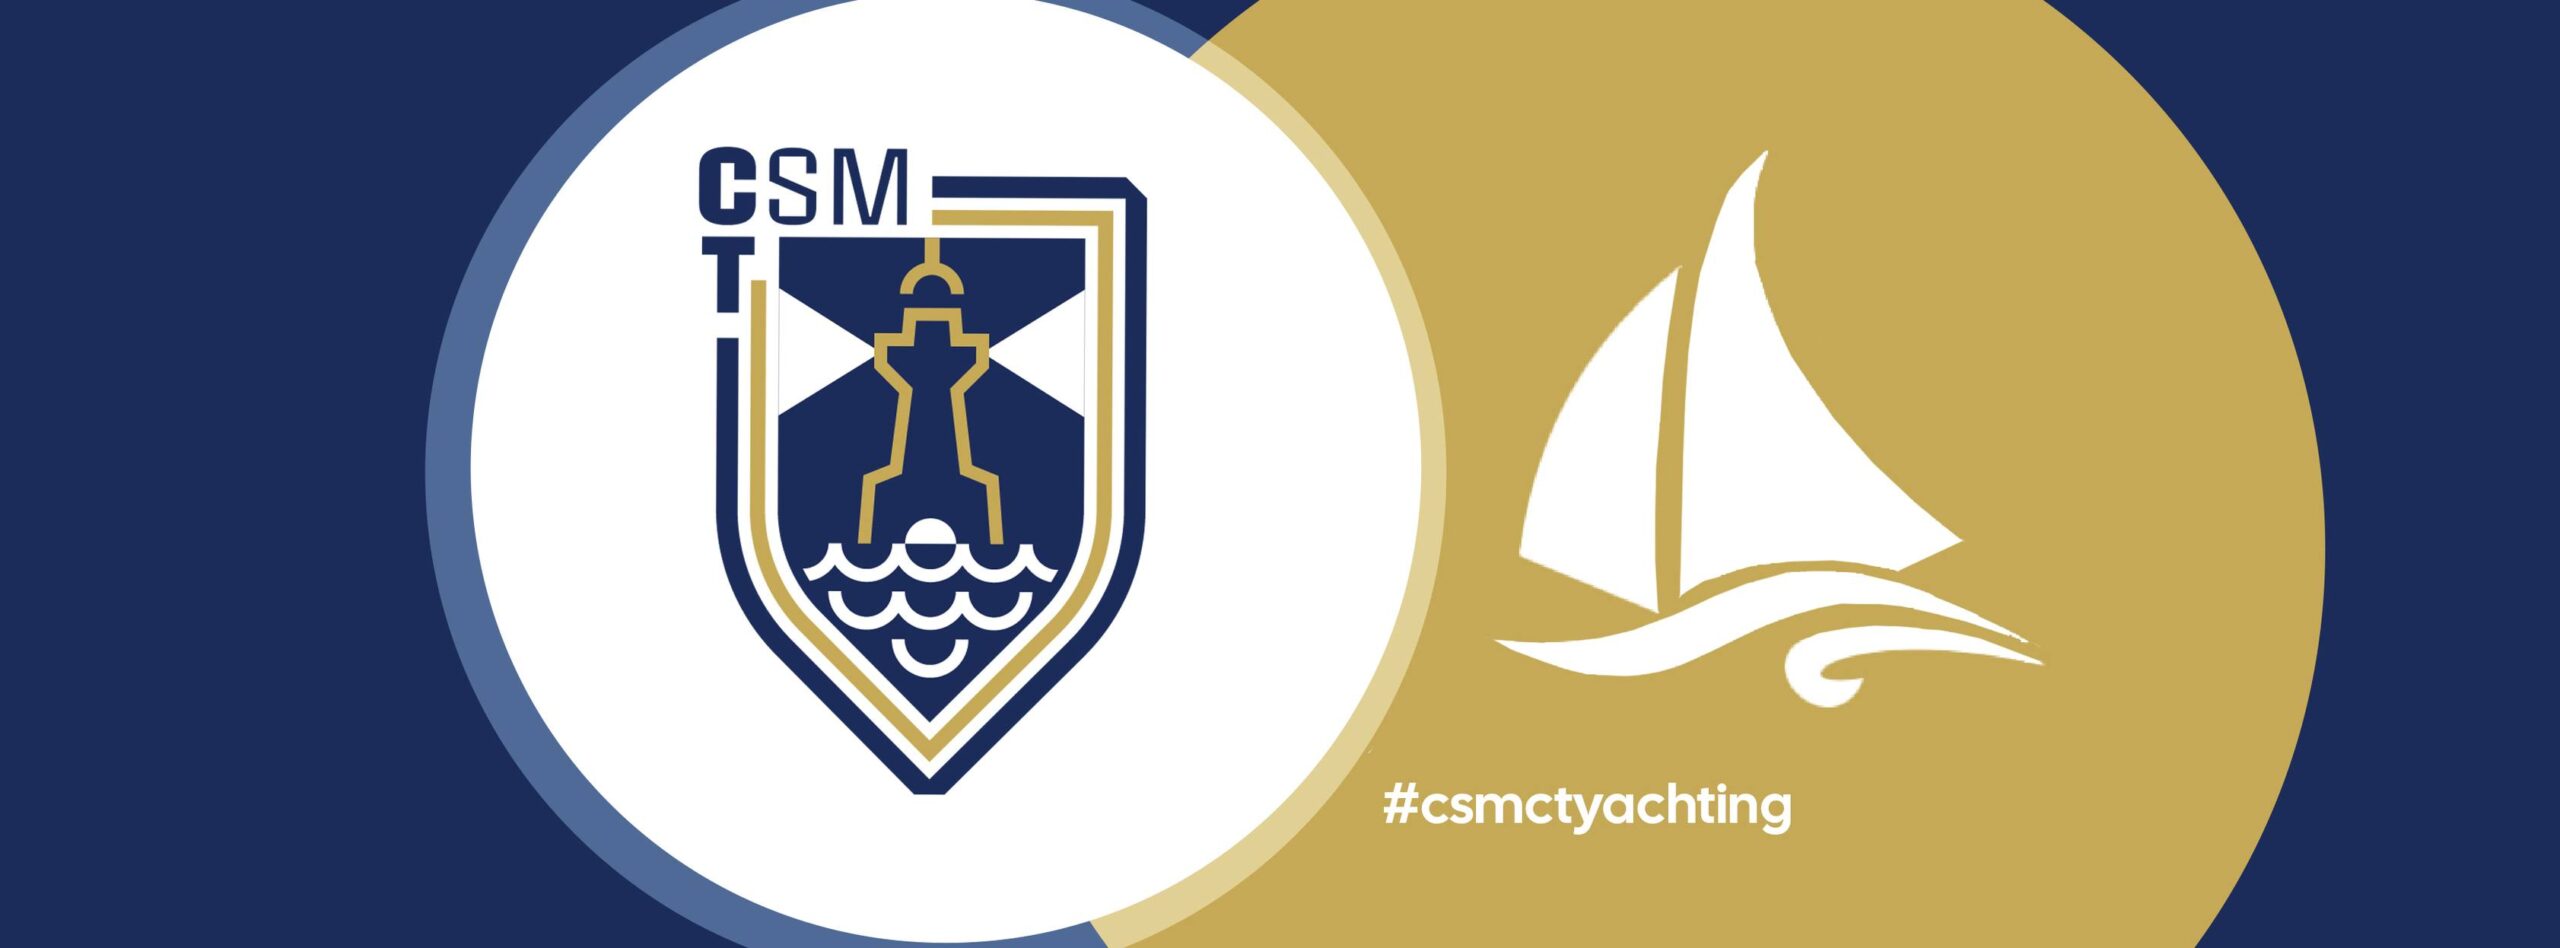 Secția de Yachting CSM Constanța